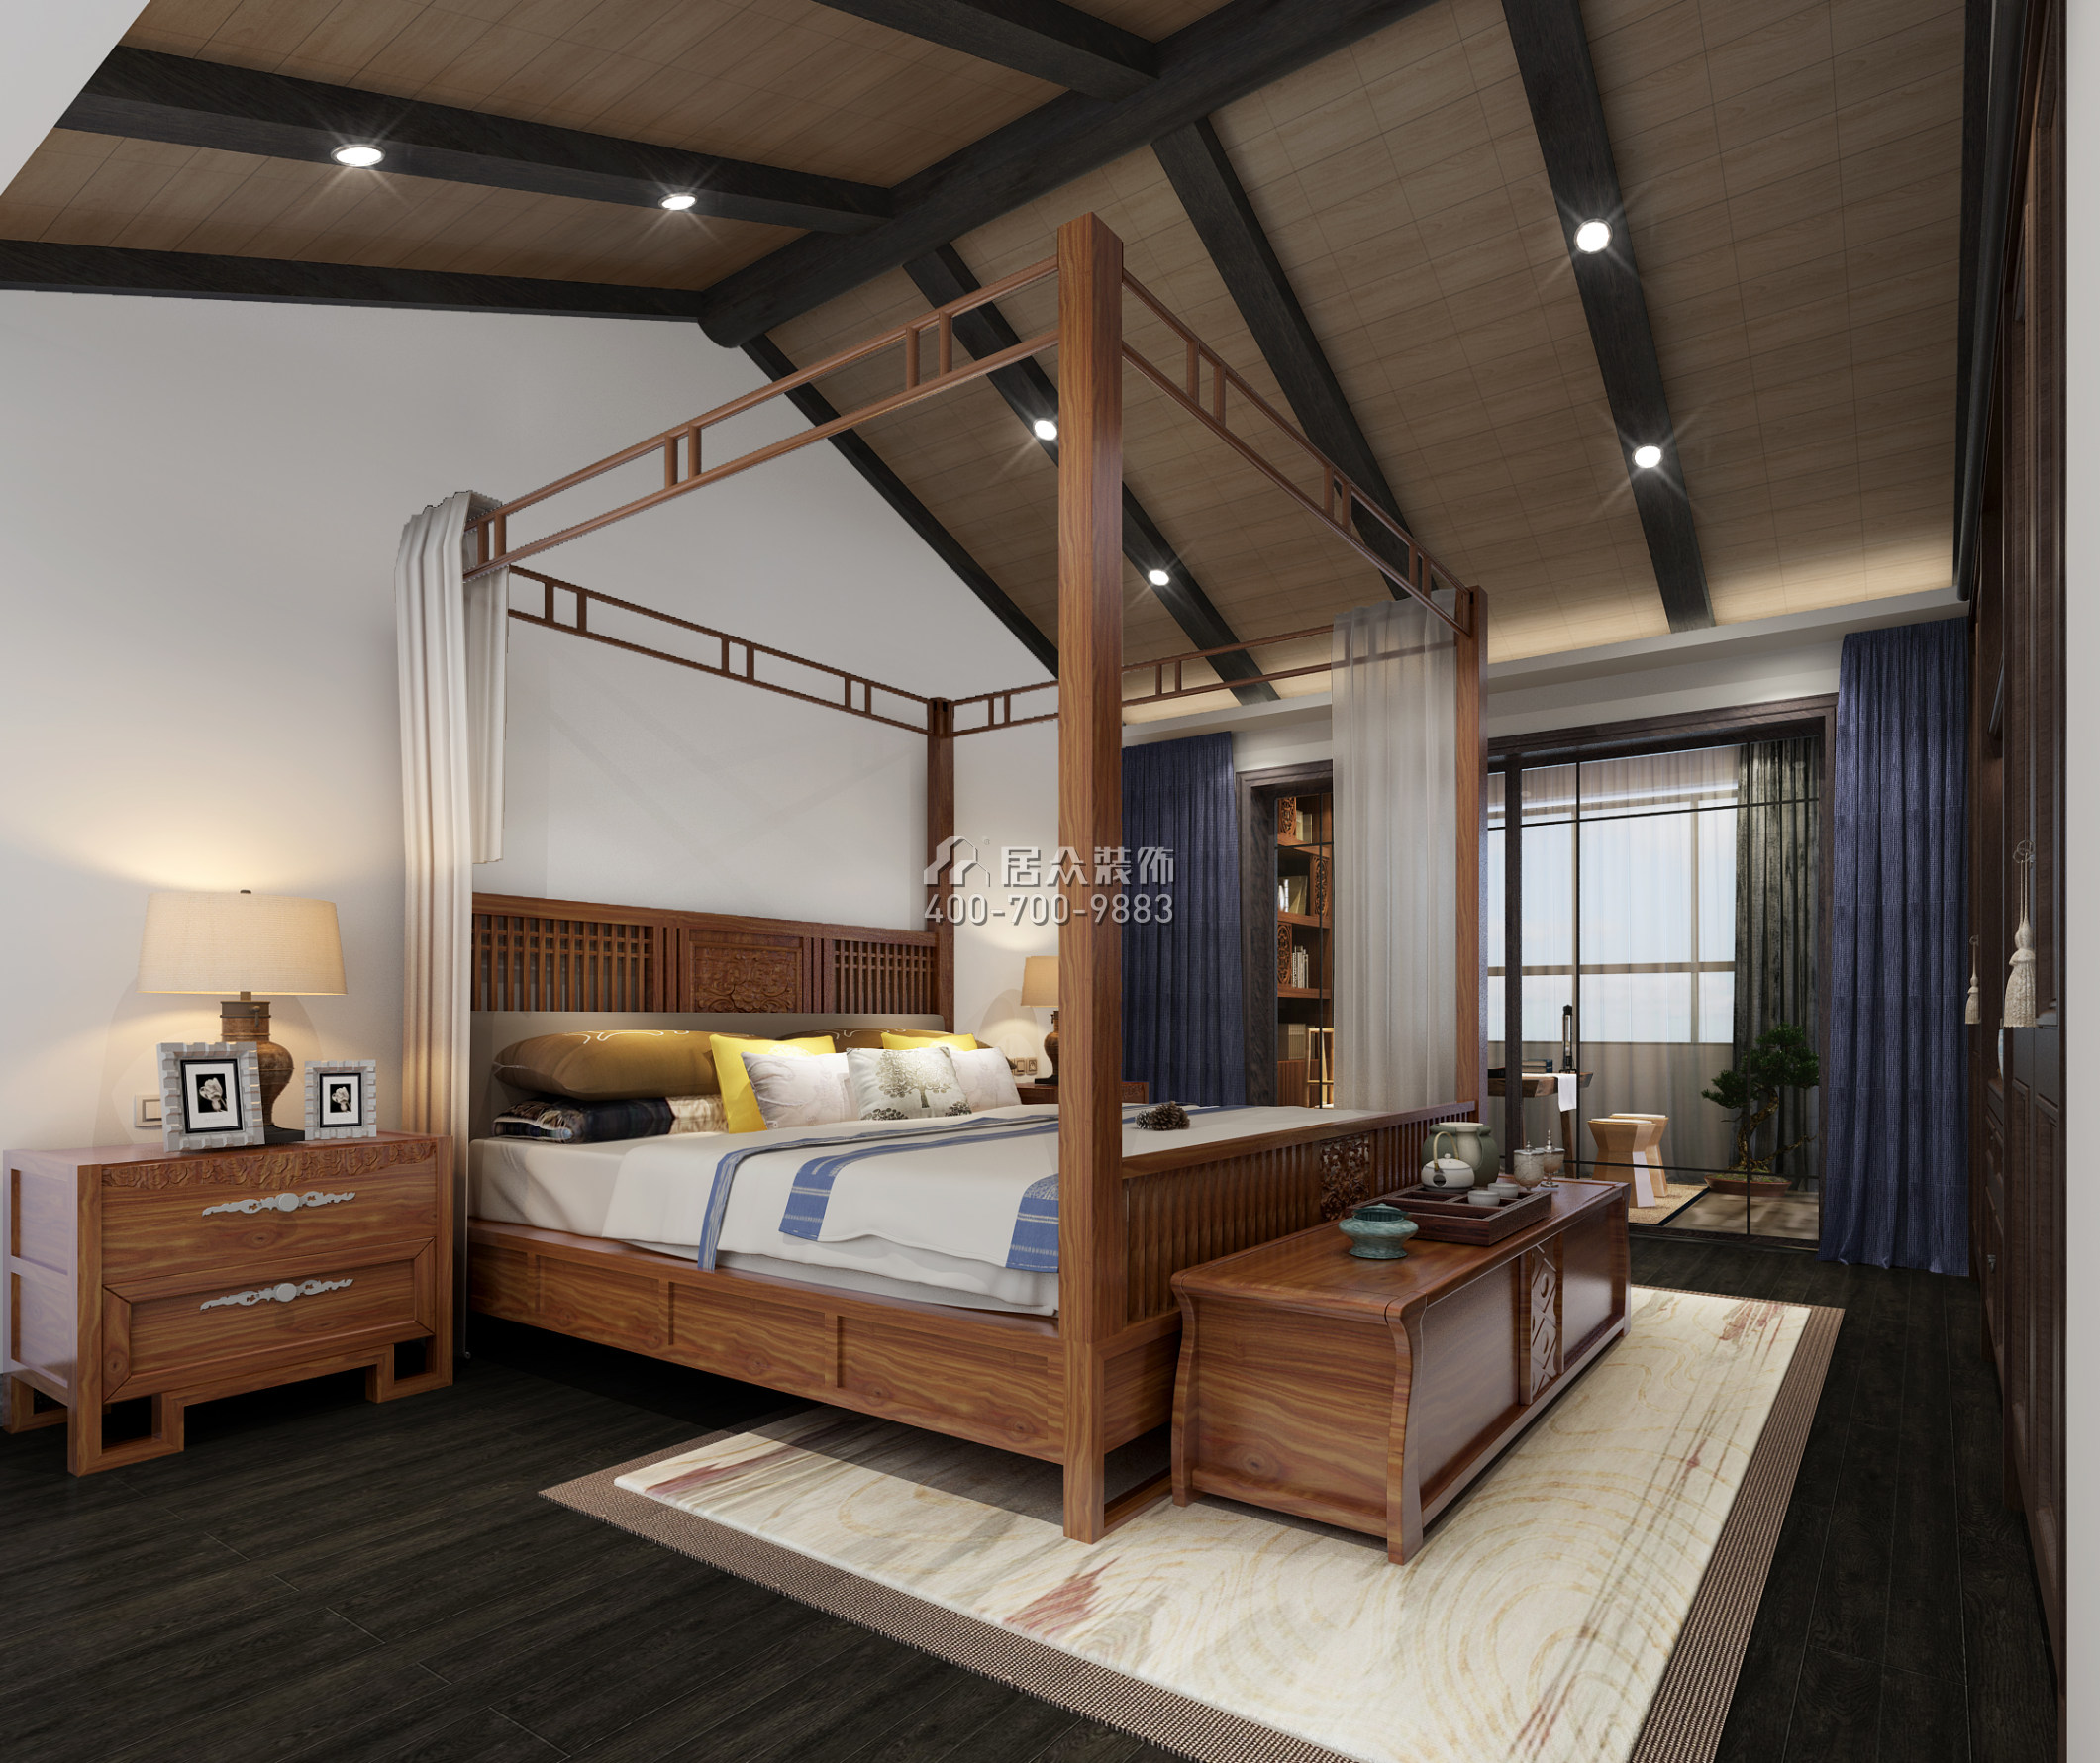 觀瀾湖御林山180平方米中式風格復式戶型臥室裝修效果圖